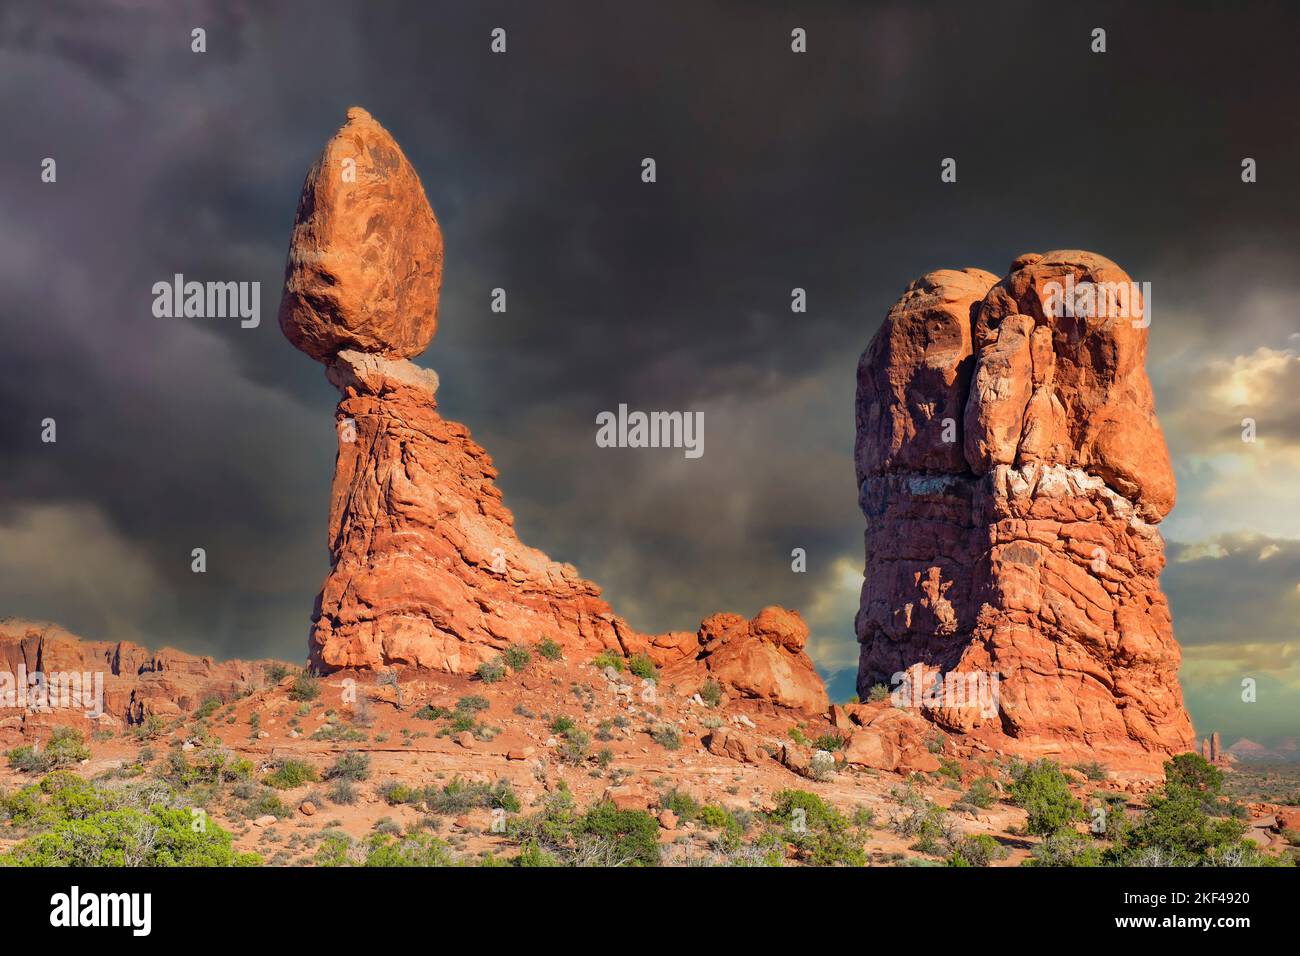 Balanced Rock bei Sonnenuntergang und aufziehendem Gewitter, Arches Nationalpark, Utah, Südwesten, USA, Nordamerika Stock Photo